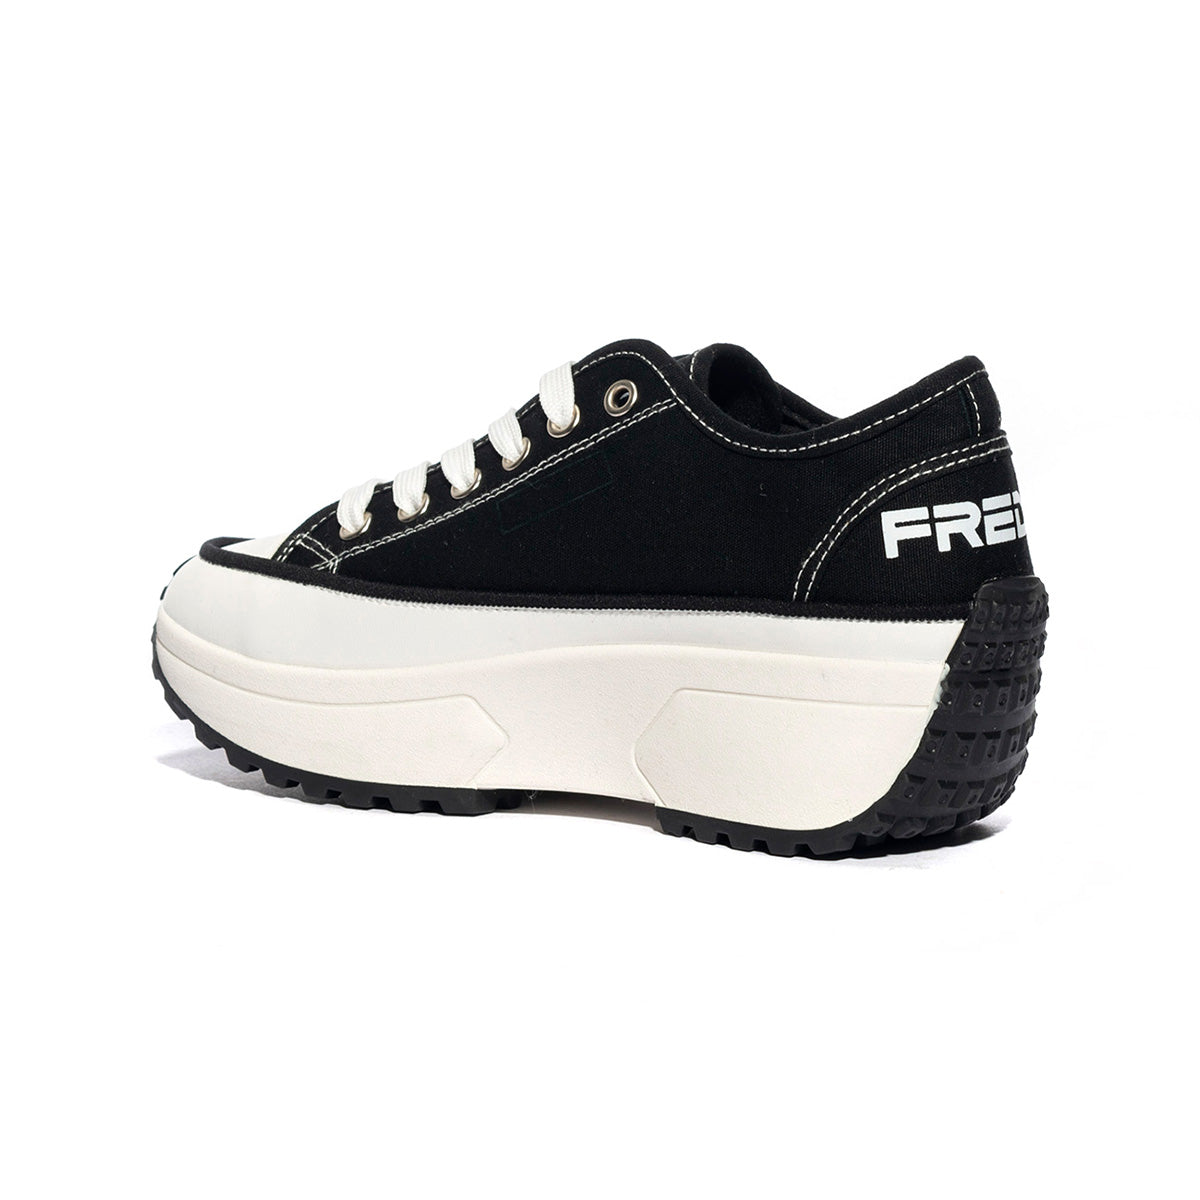 Sneakers Freddy S00fy7585 Nere